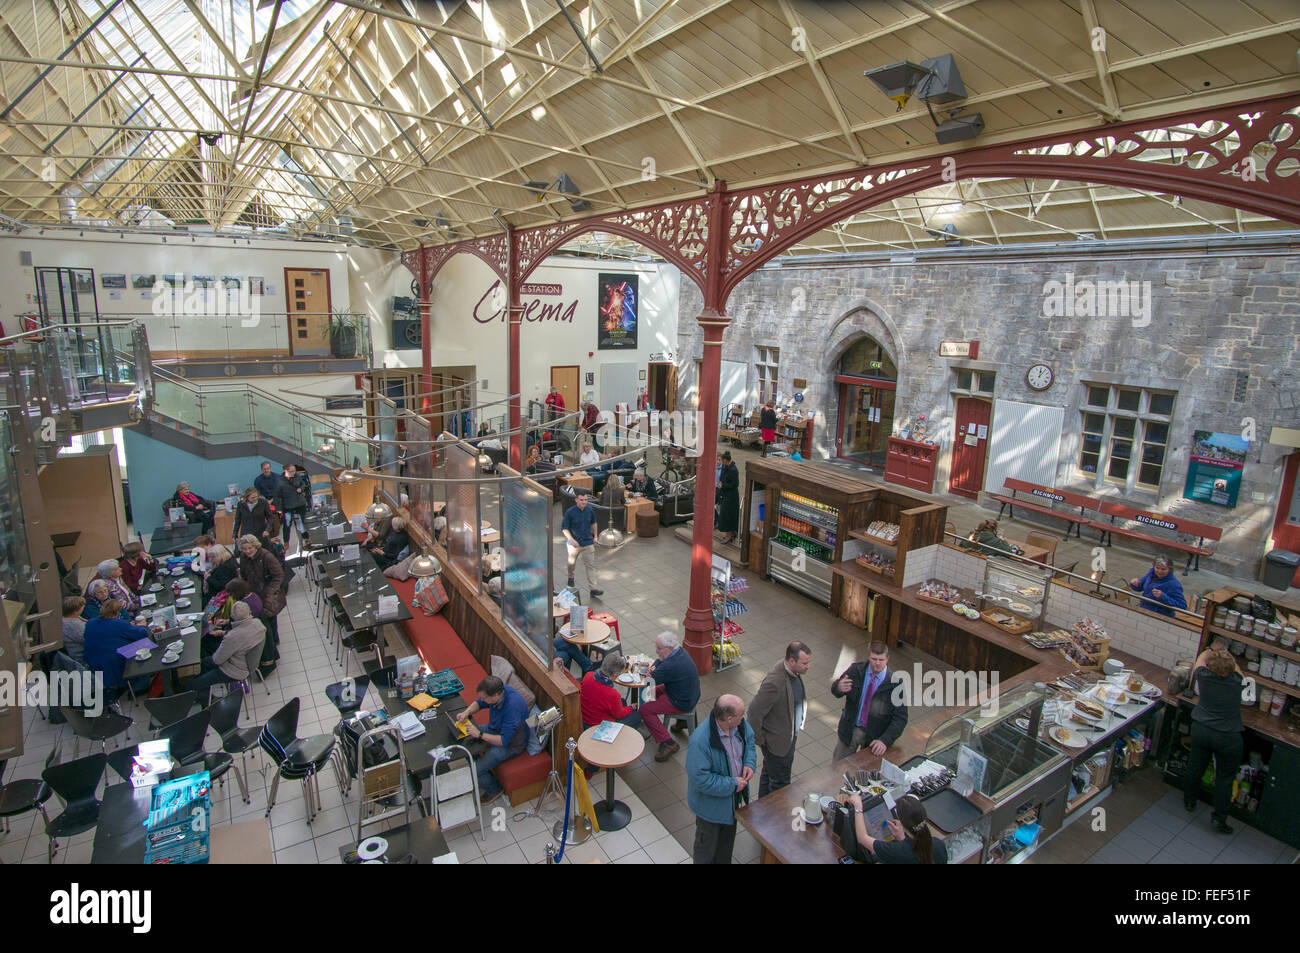 Les personnes mangeant à l'intérieur de l'ancienne gare café Richmond, North Yorkshire, England, UK Banque D'Images